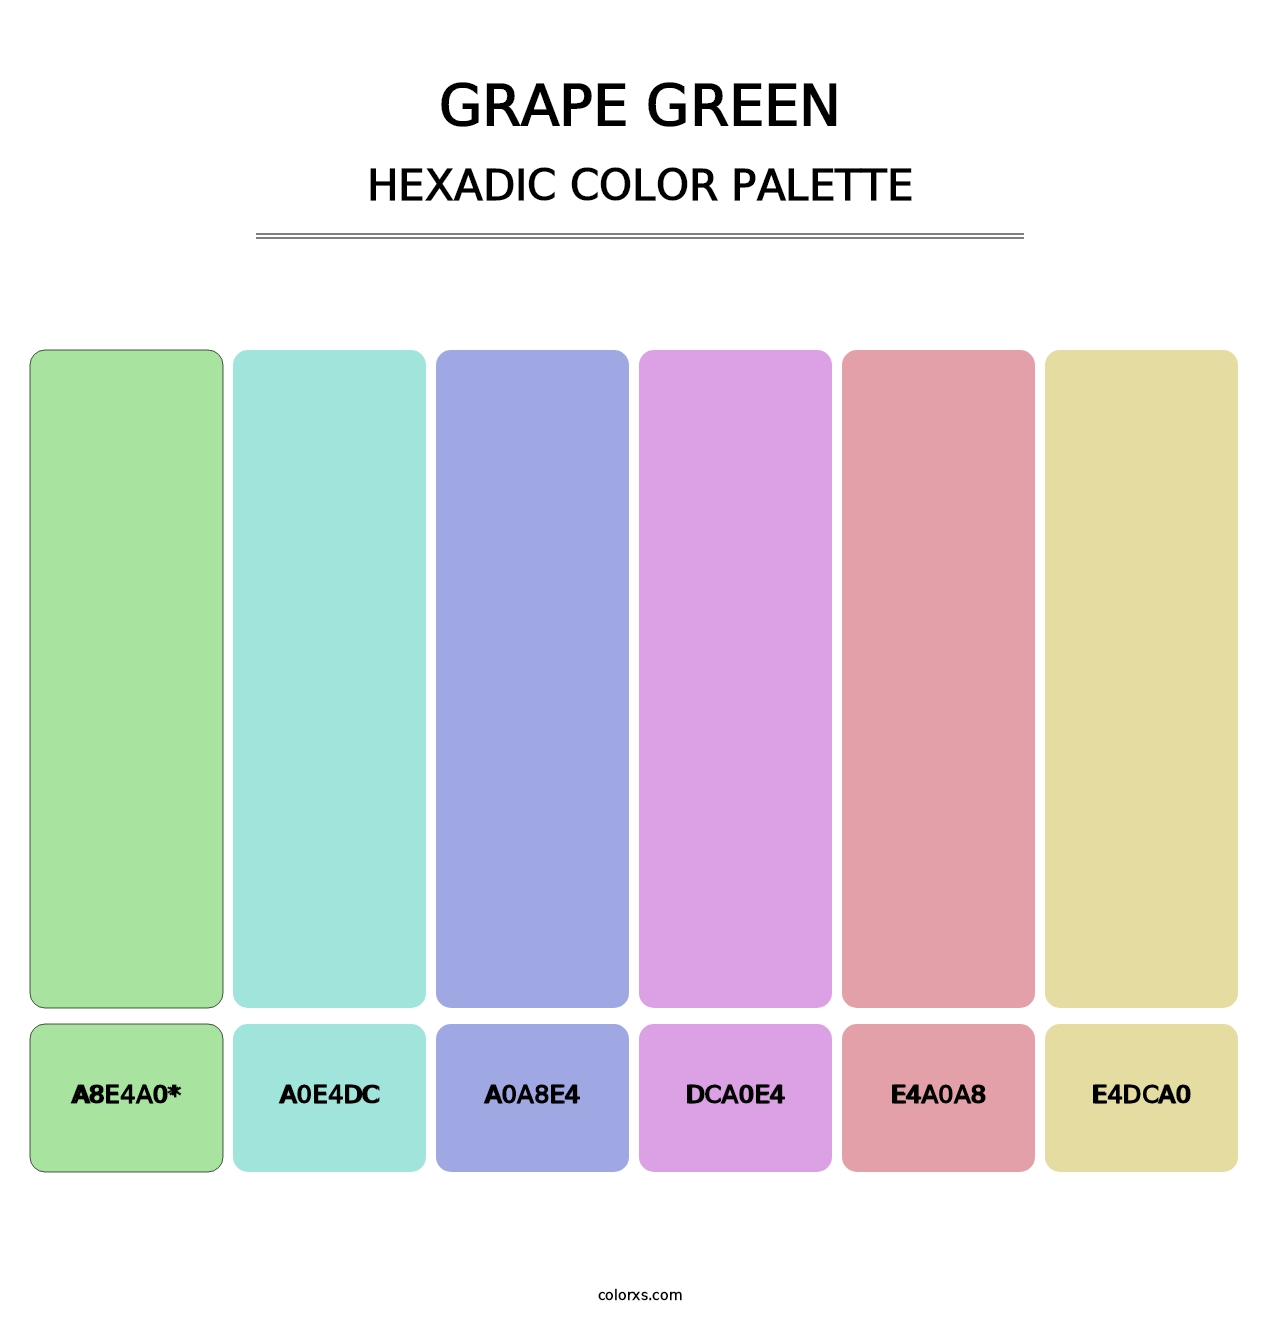 Grape Green - Hexadic Color Palette